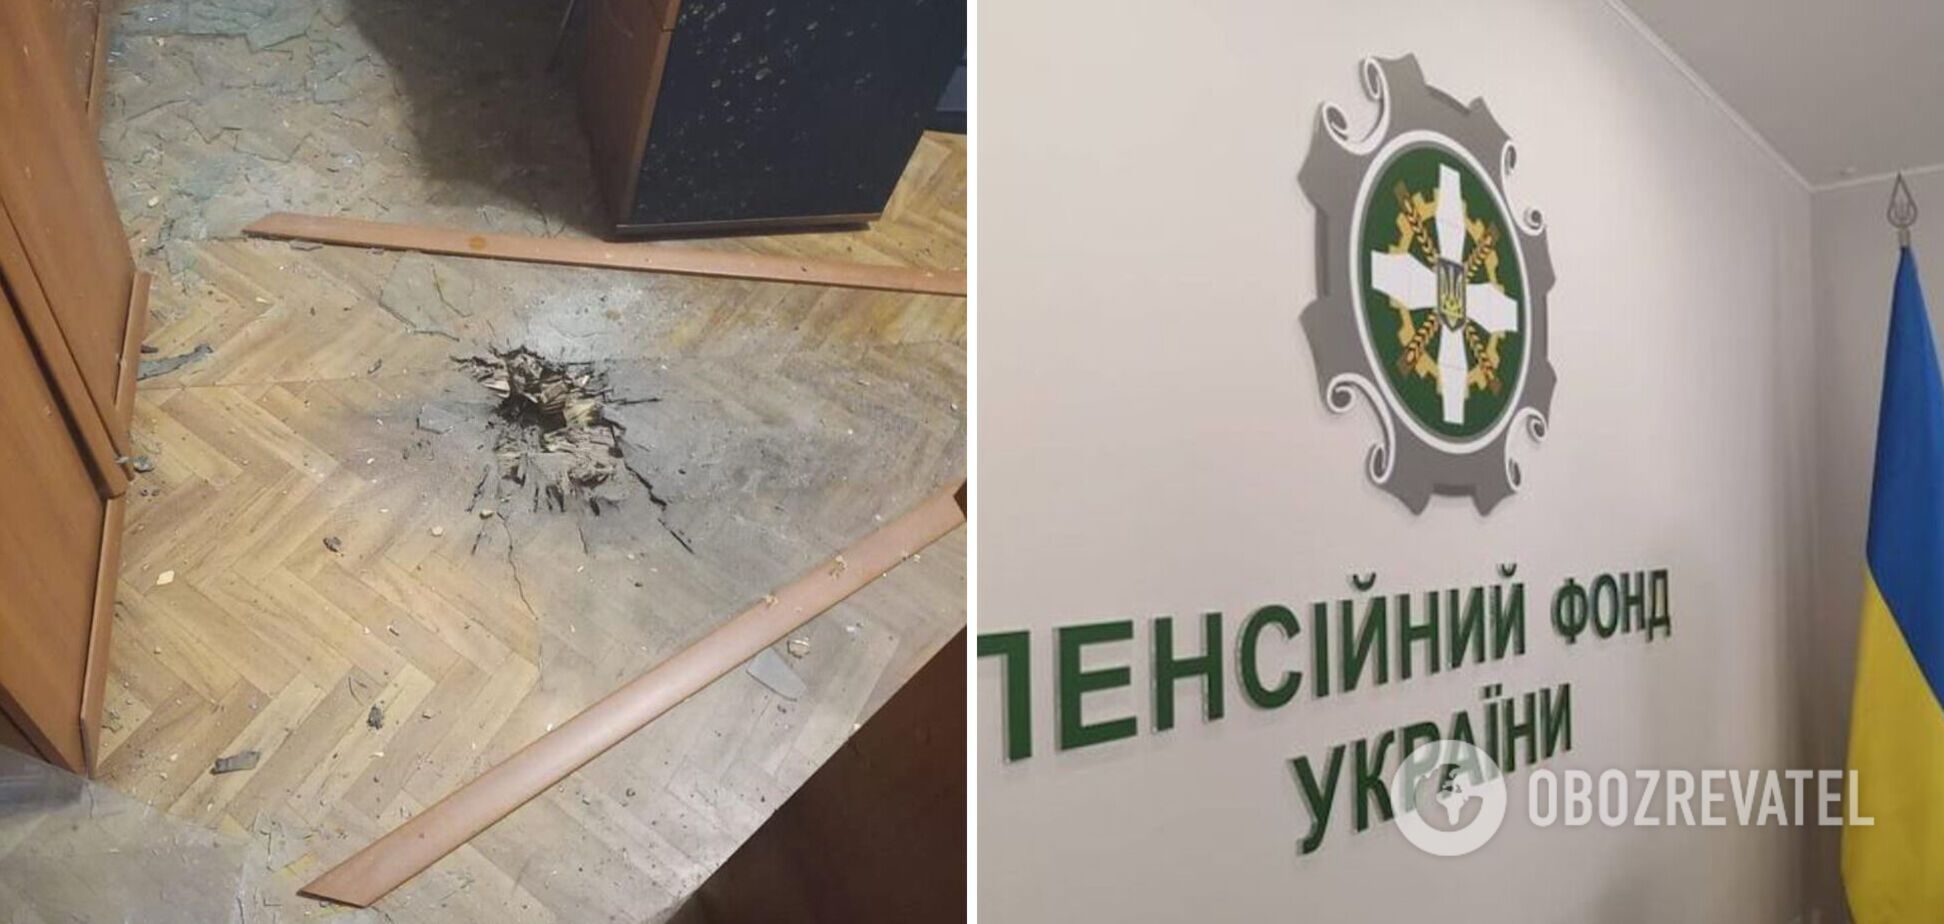 На Днепропетровщине мужчина ворвался в пенсионный фонд с гранатой и взял заложницу: прогремел взрыв. Фото